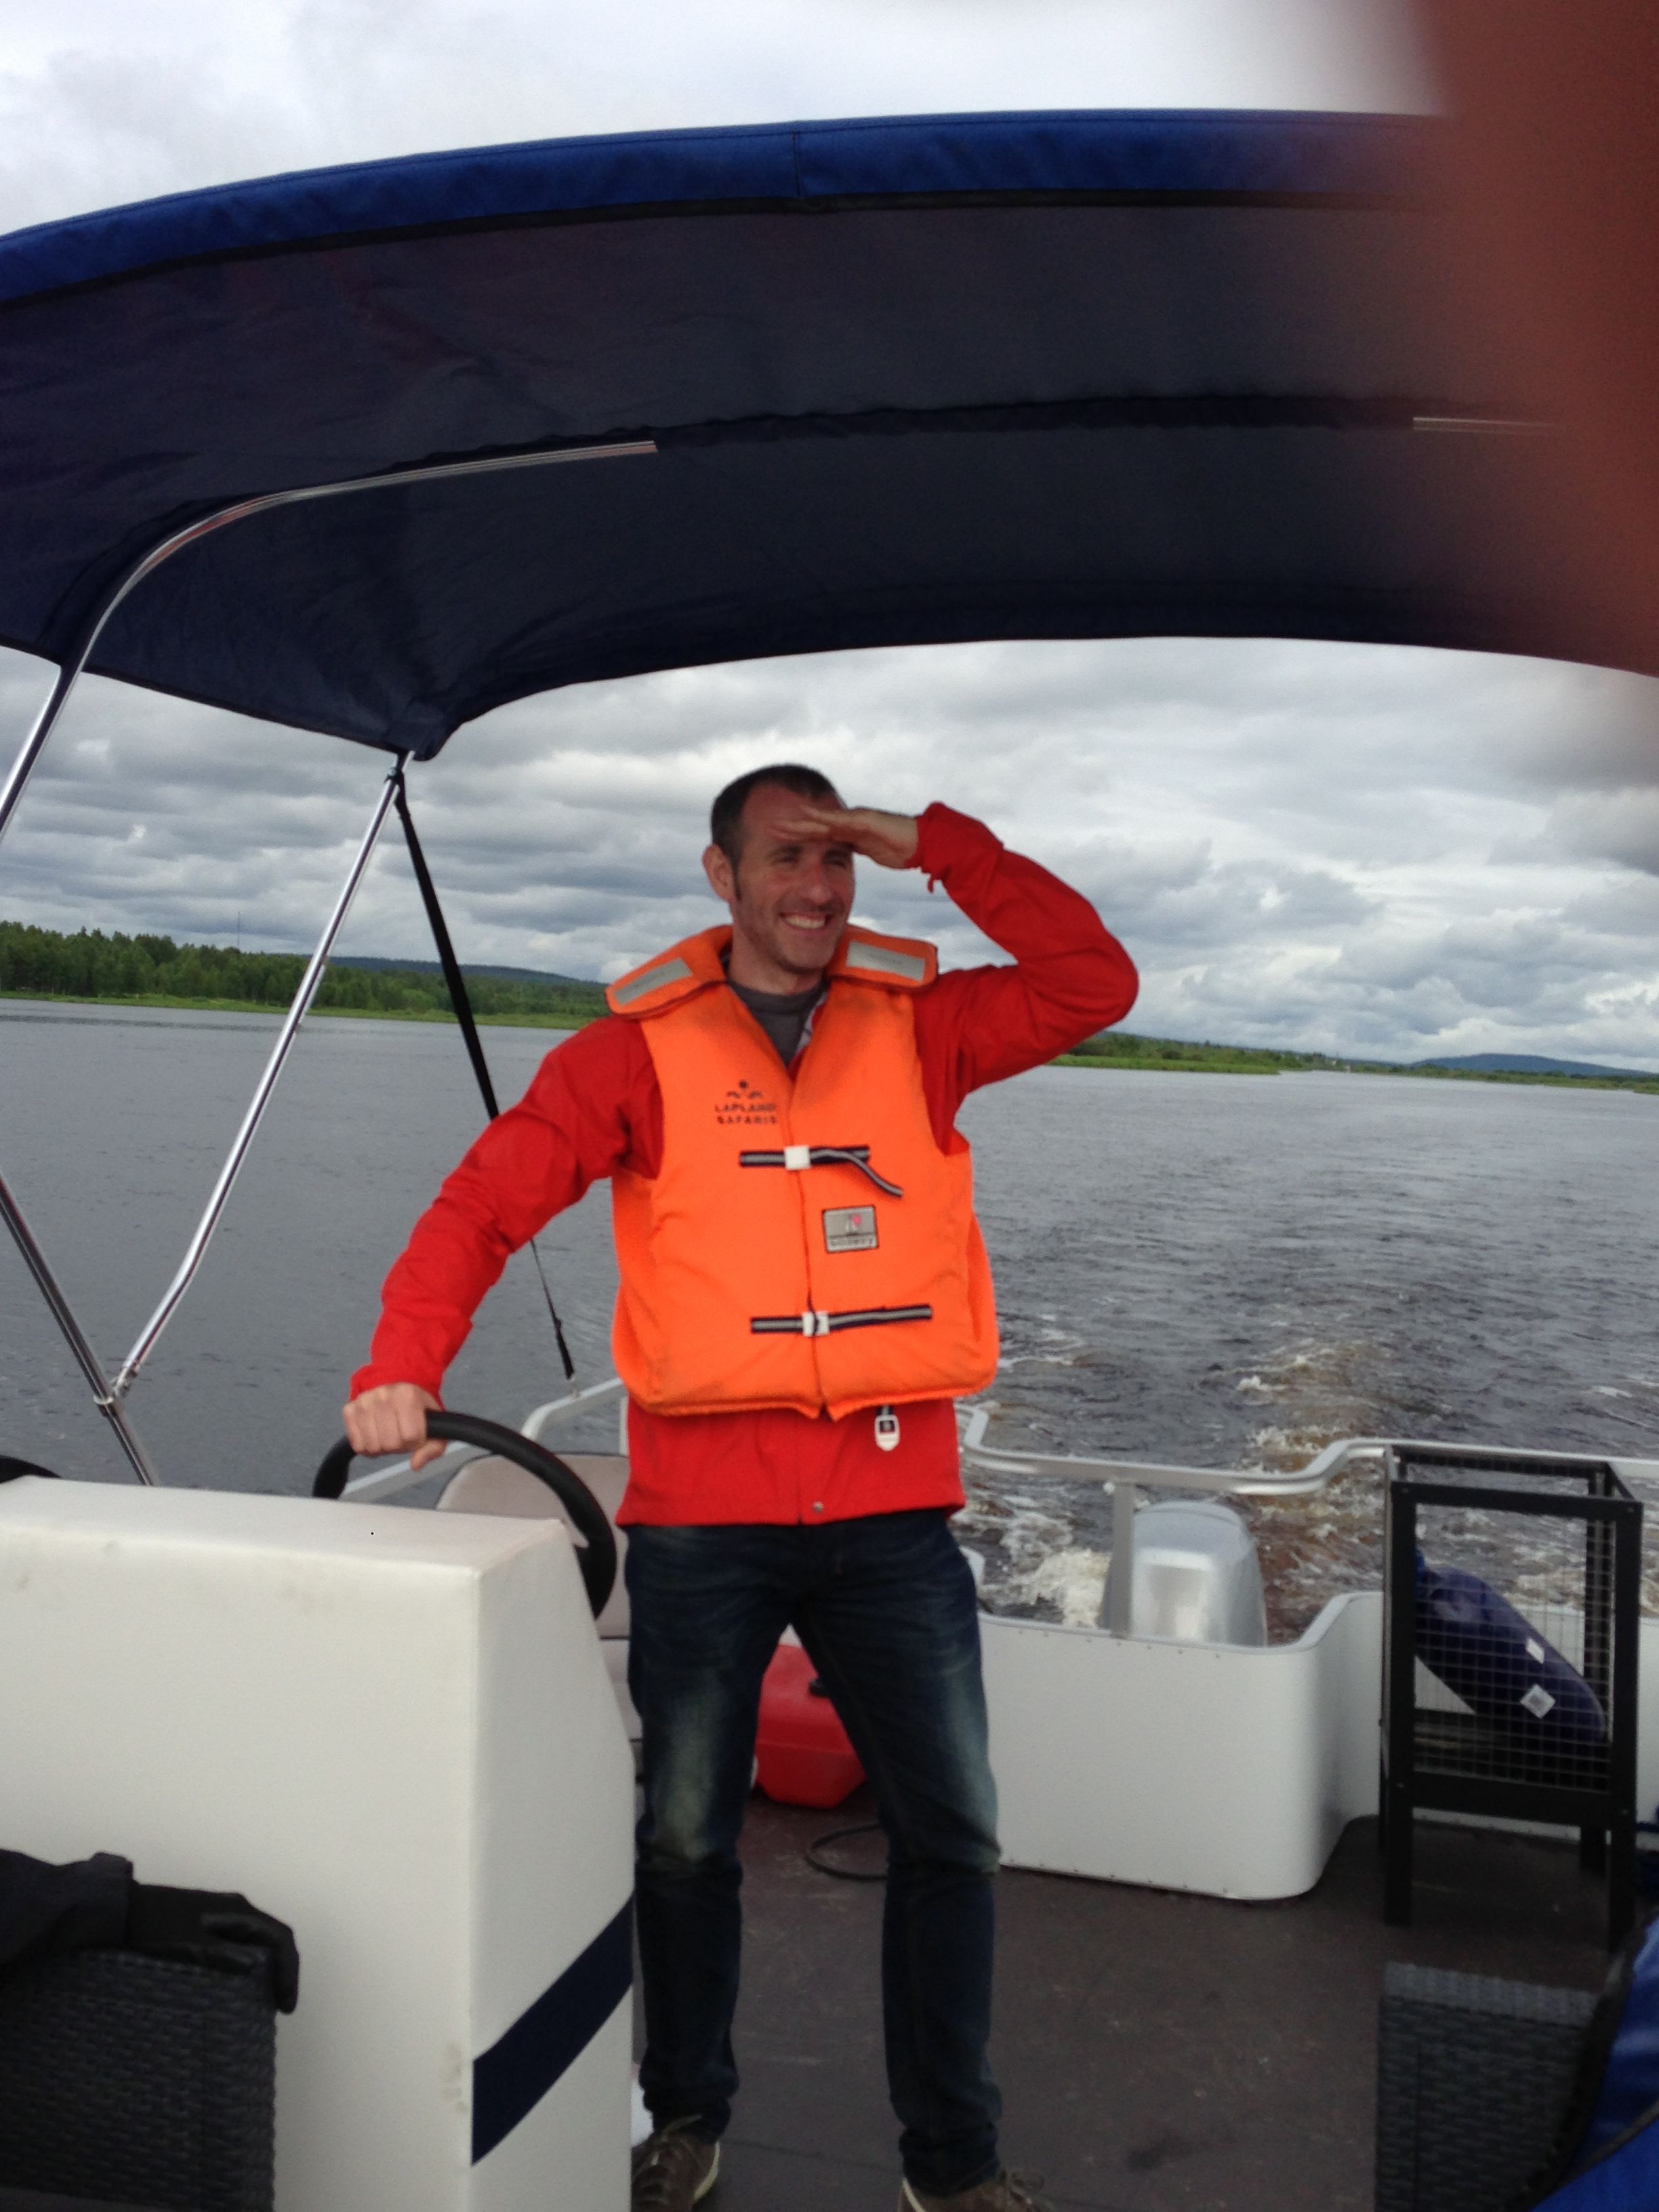 Tomando el mando sobre la barcaza. Me falta estilo de capitán (río Ounas, Rovaniemi, Finlandia)